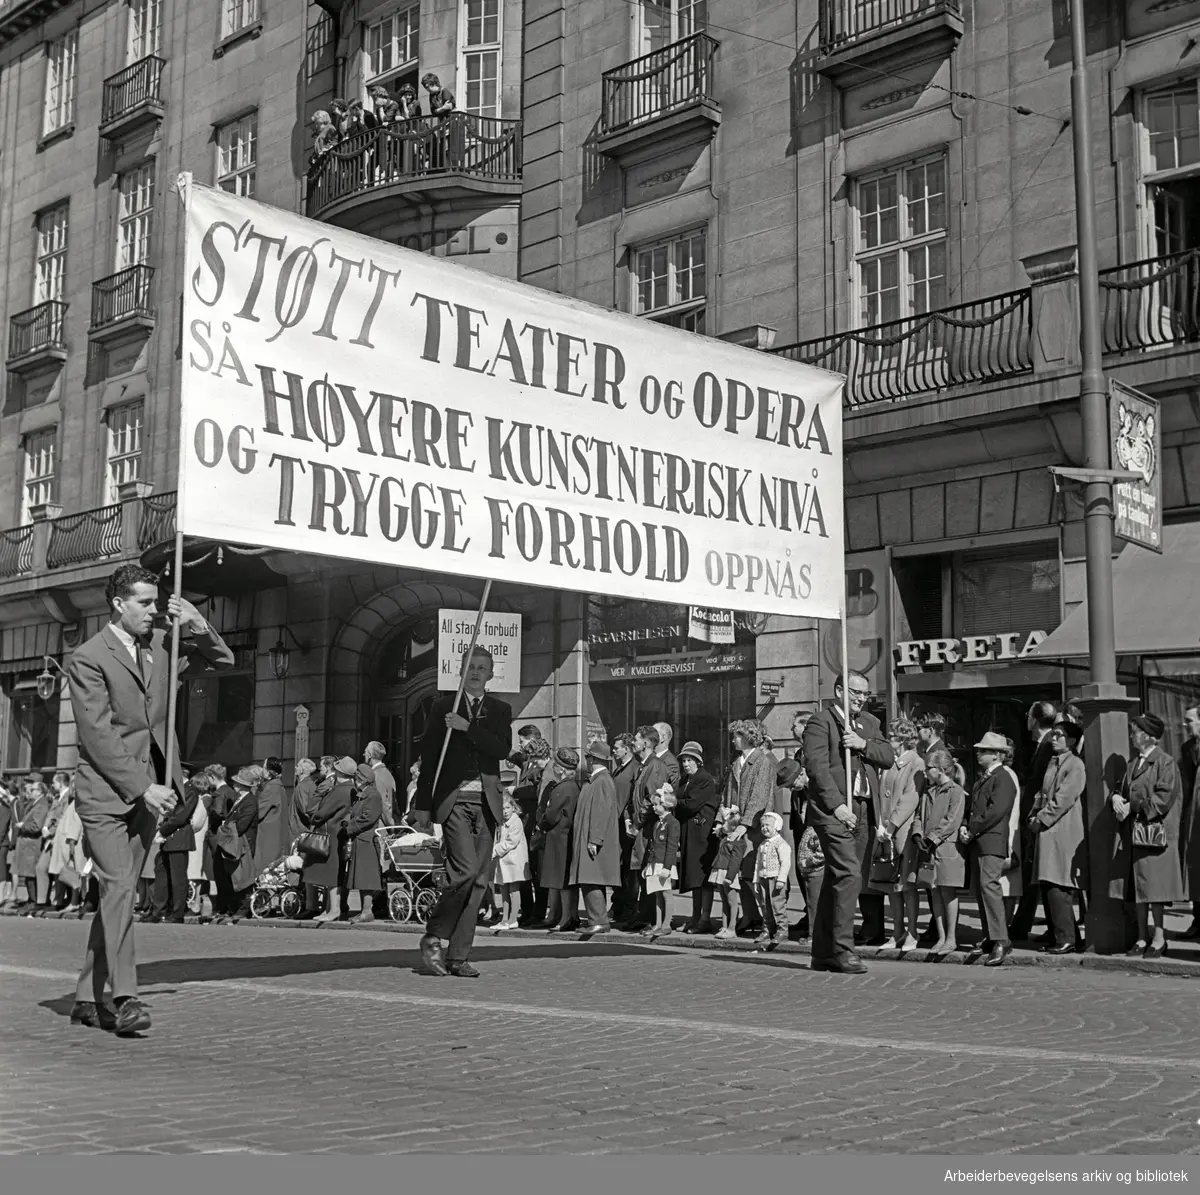 1. mai 1965 i Oslo.Demonstrasjonstoget i Karl Johans gate.Parole: Støtt teater og opera så høyere kunstnerisk nivå og trygge forhold oppnås